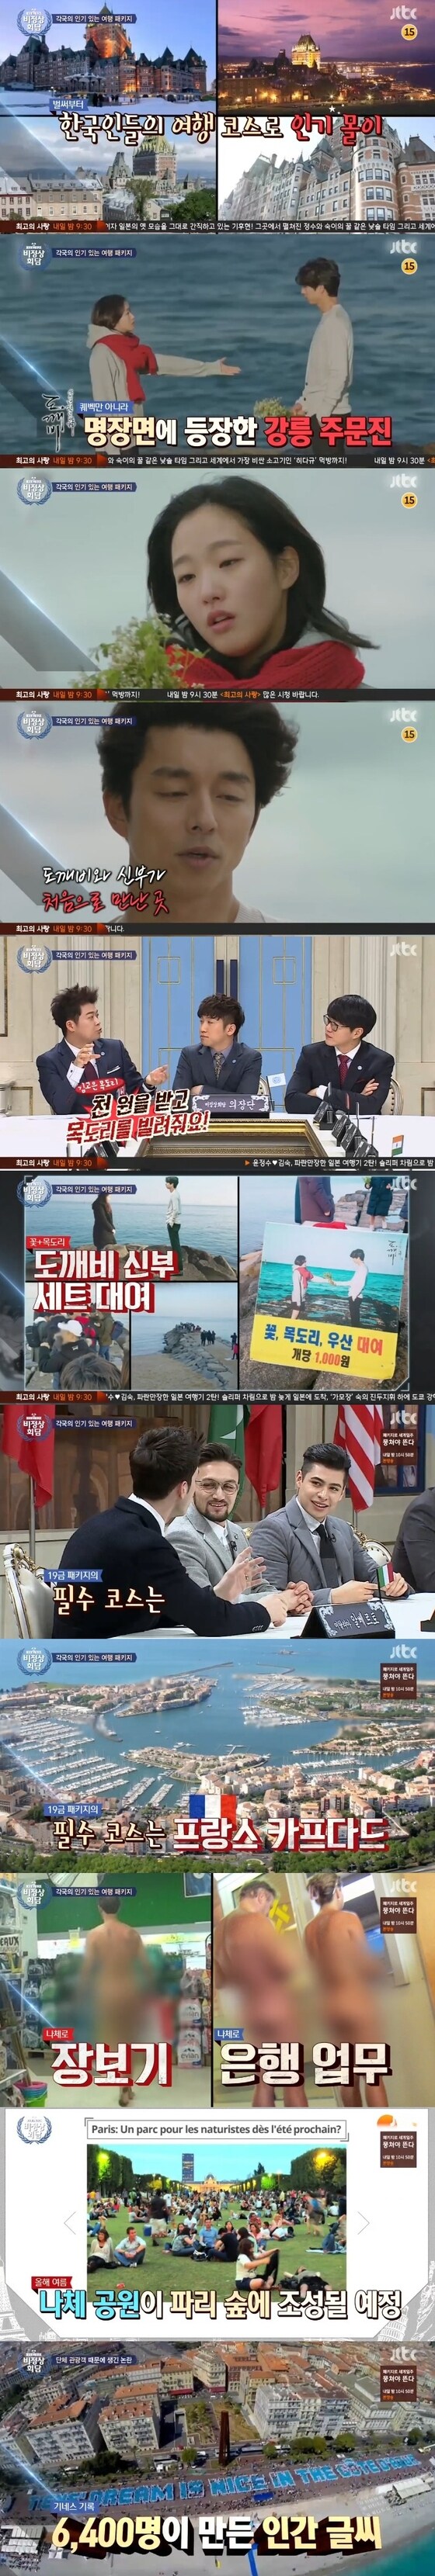 '비정상회담' 멤버들이 각국 관광 상품을 언급했다. © News1star / JTBC '비정상회담' 캡처